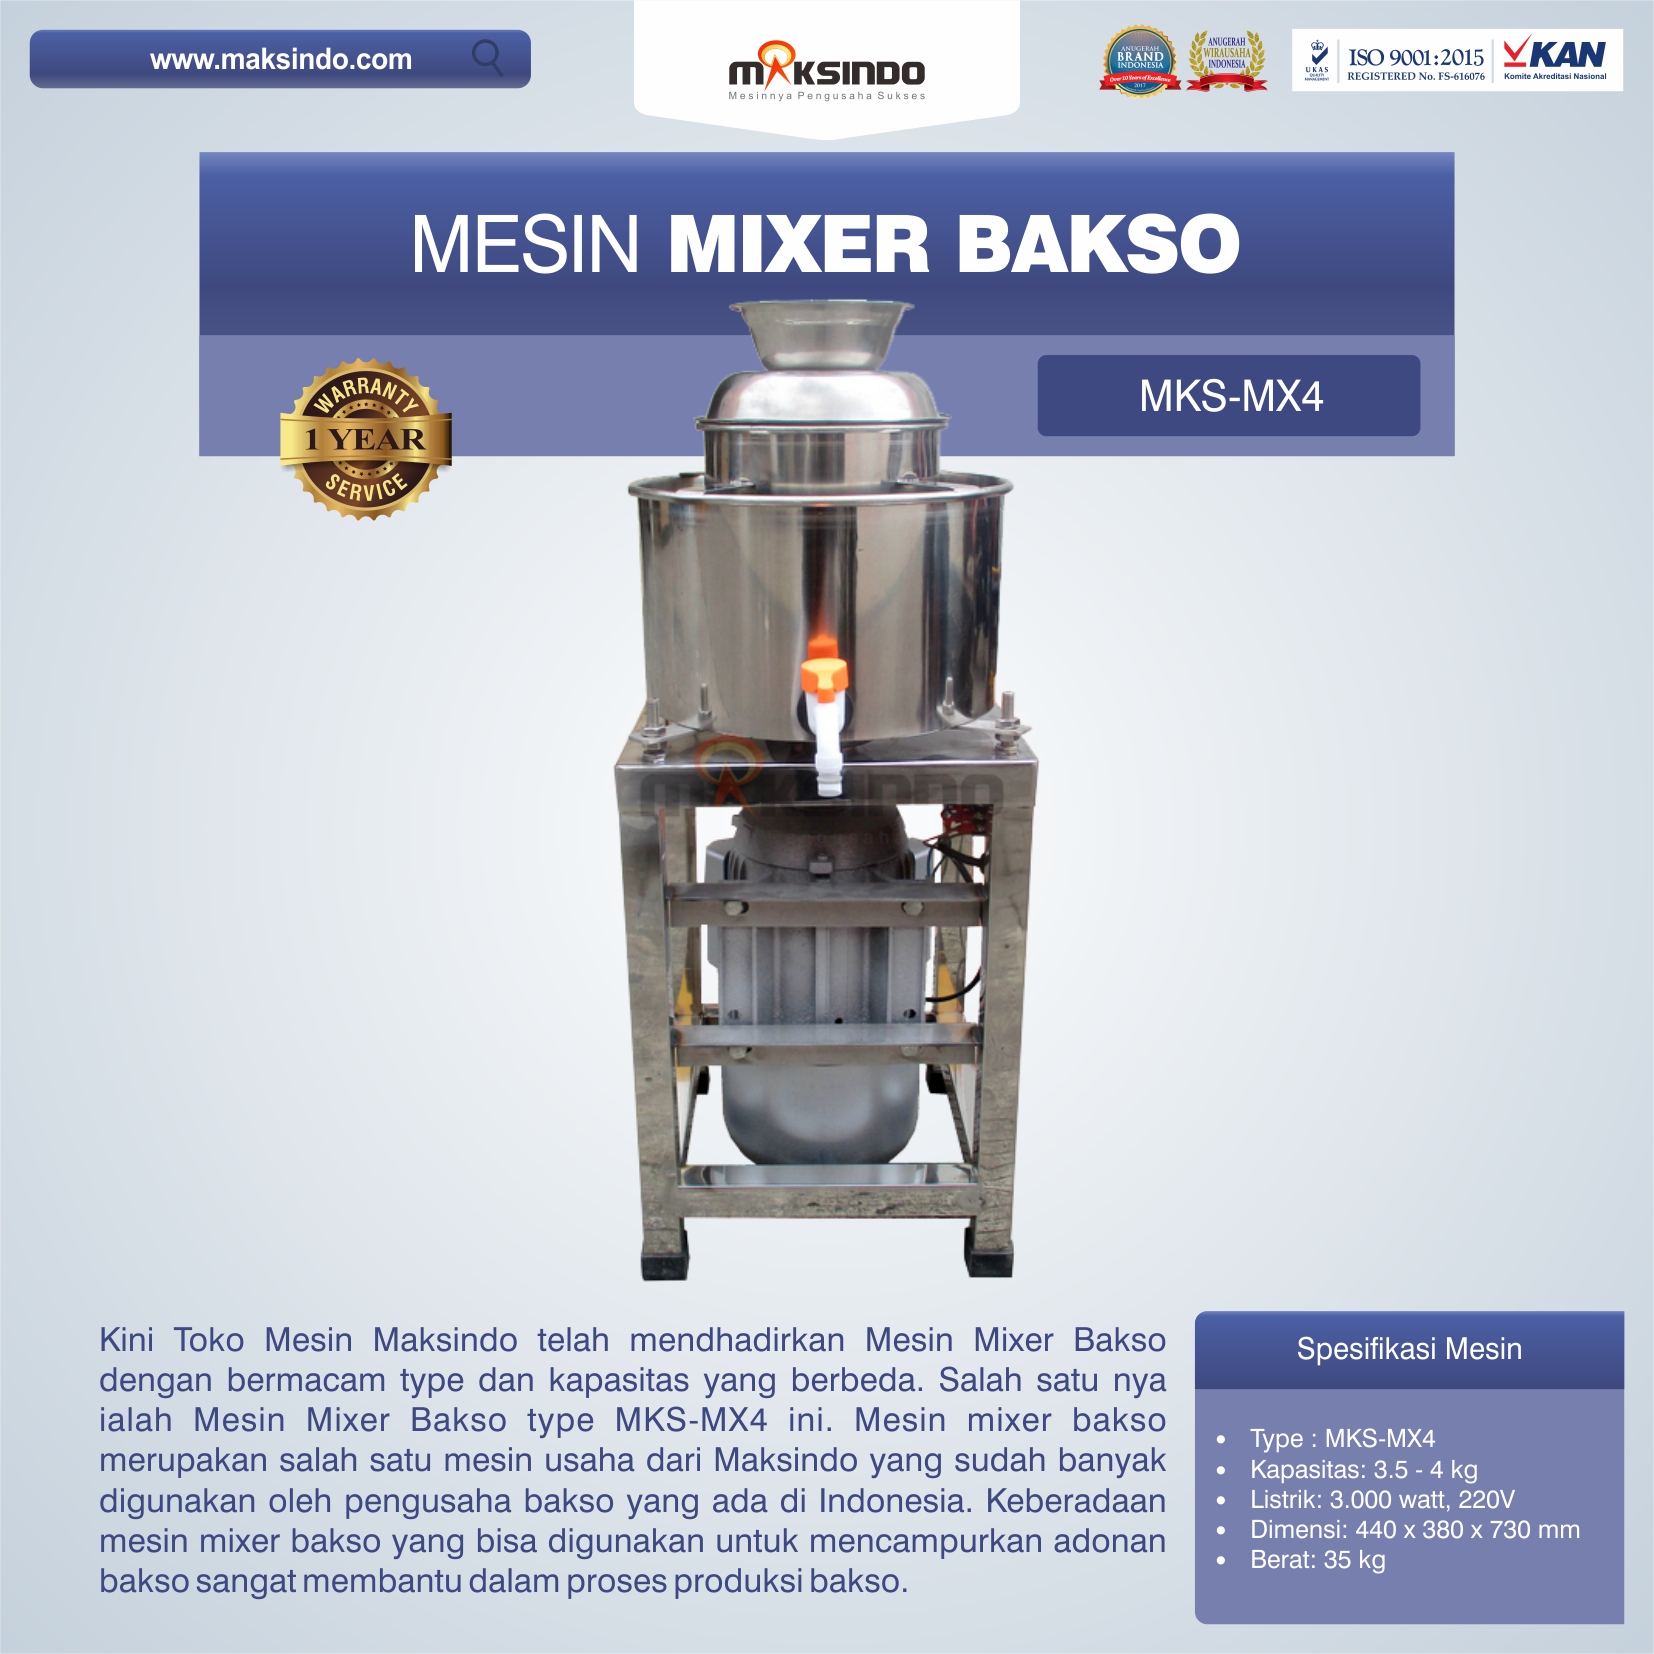 Jual Mesin Mixer Bakso MKS-MX4 di Medan